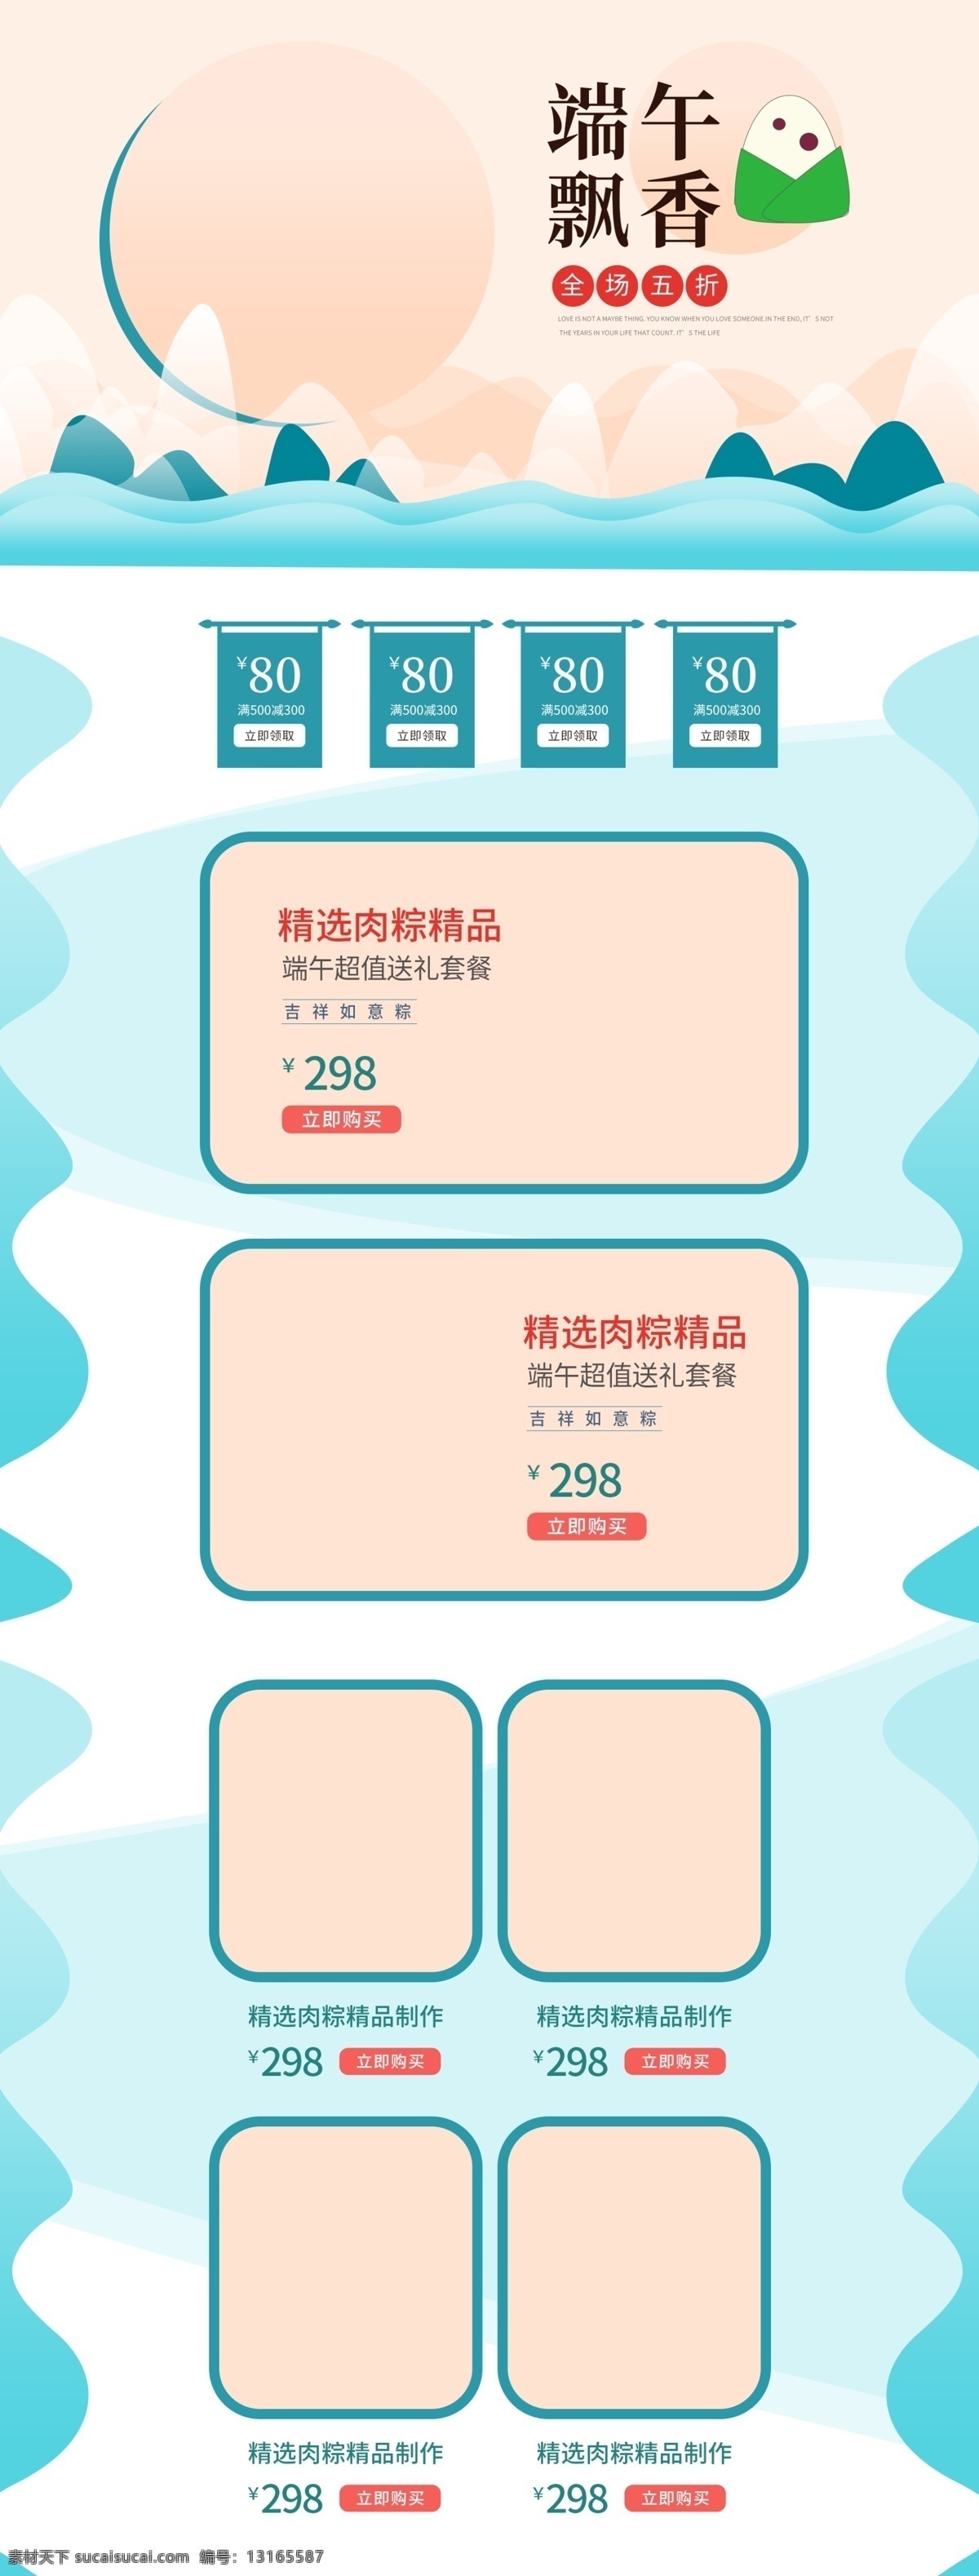 端午节 专题 粽子 首页 网店素材 淘宝界面设计 淘宝 广告 banner